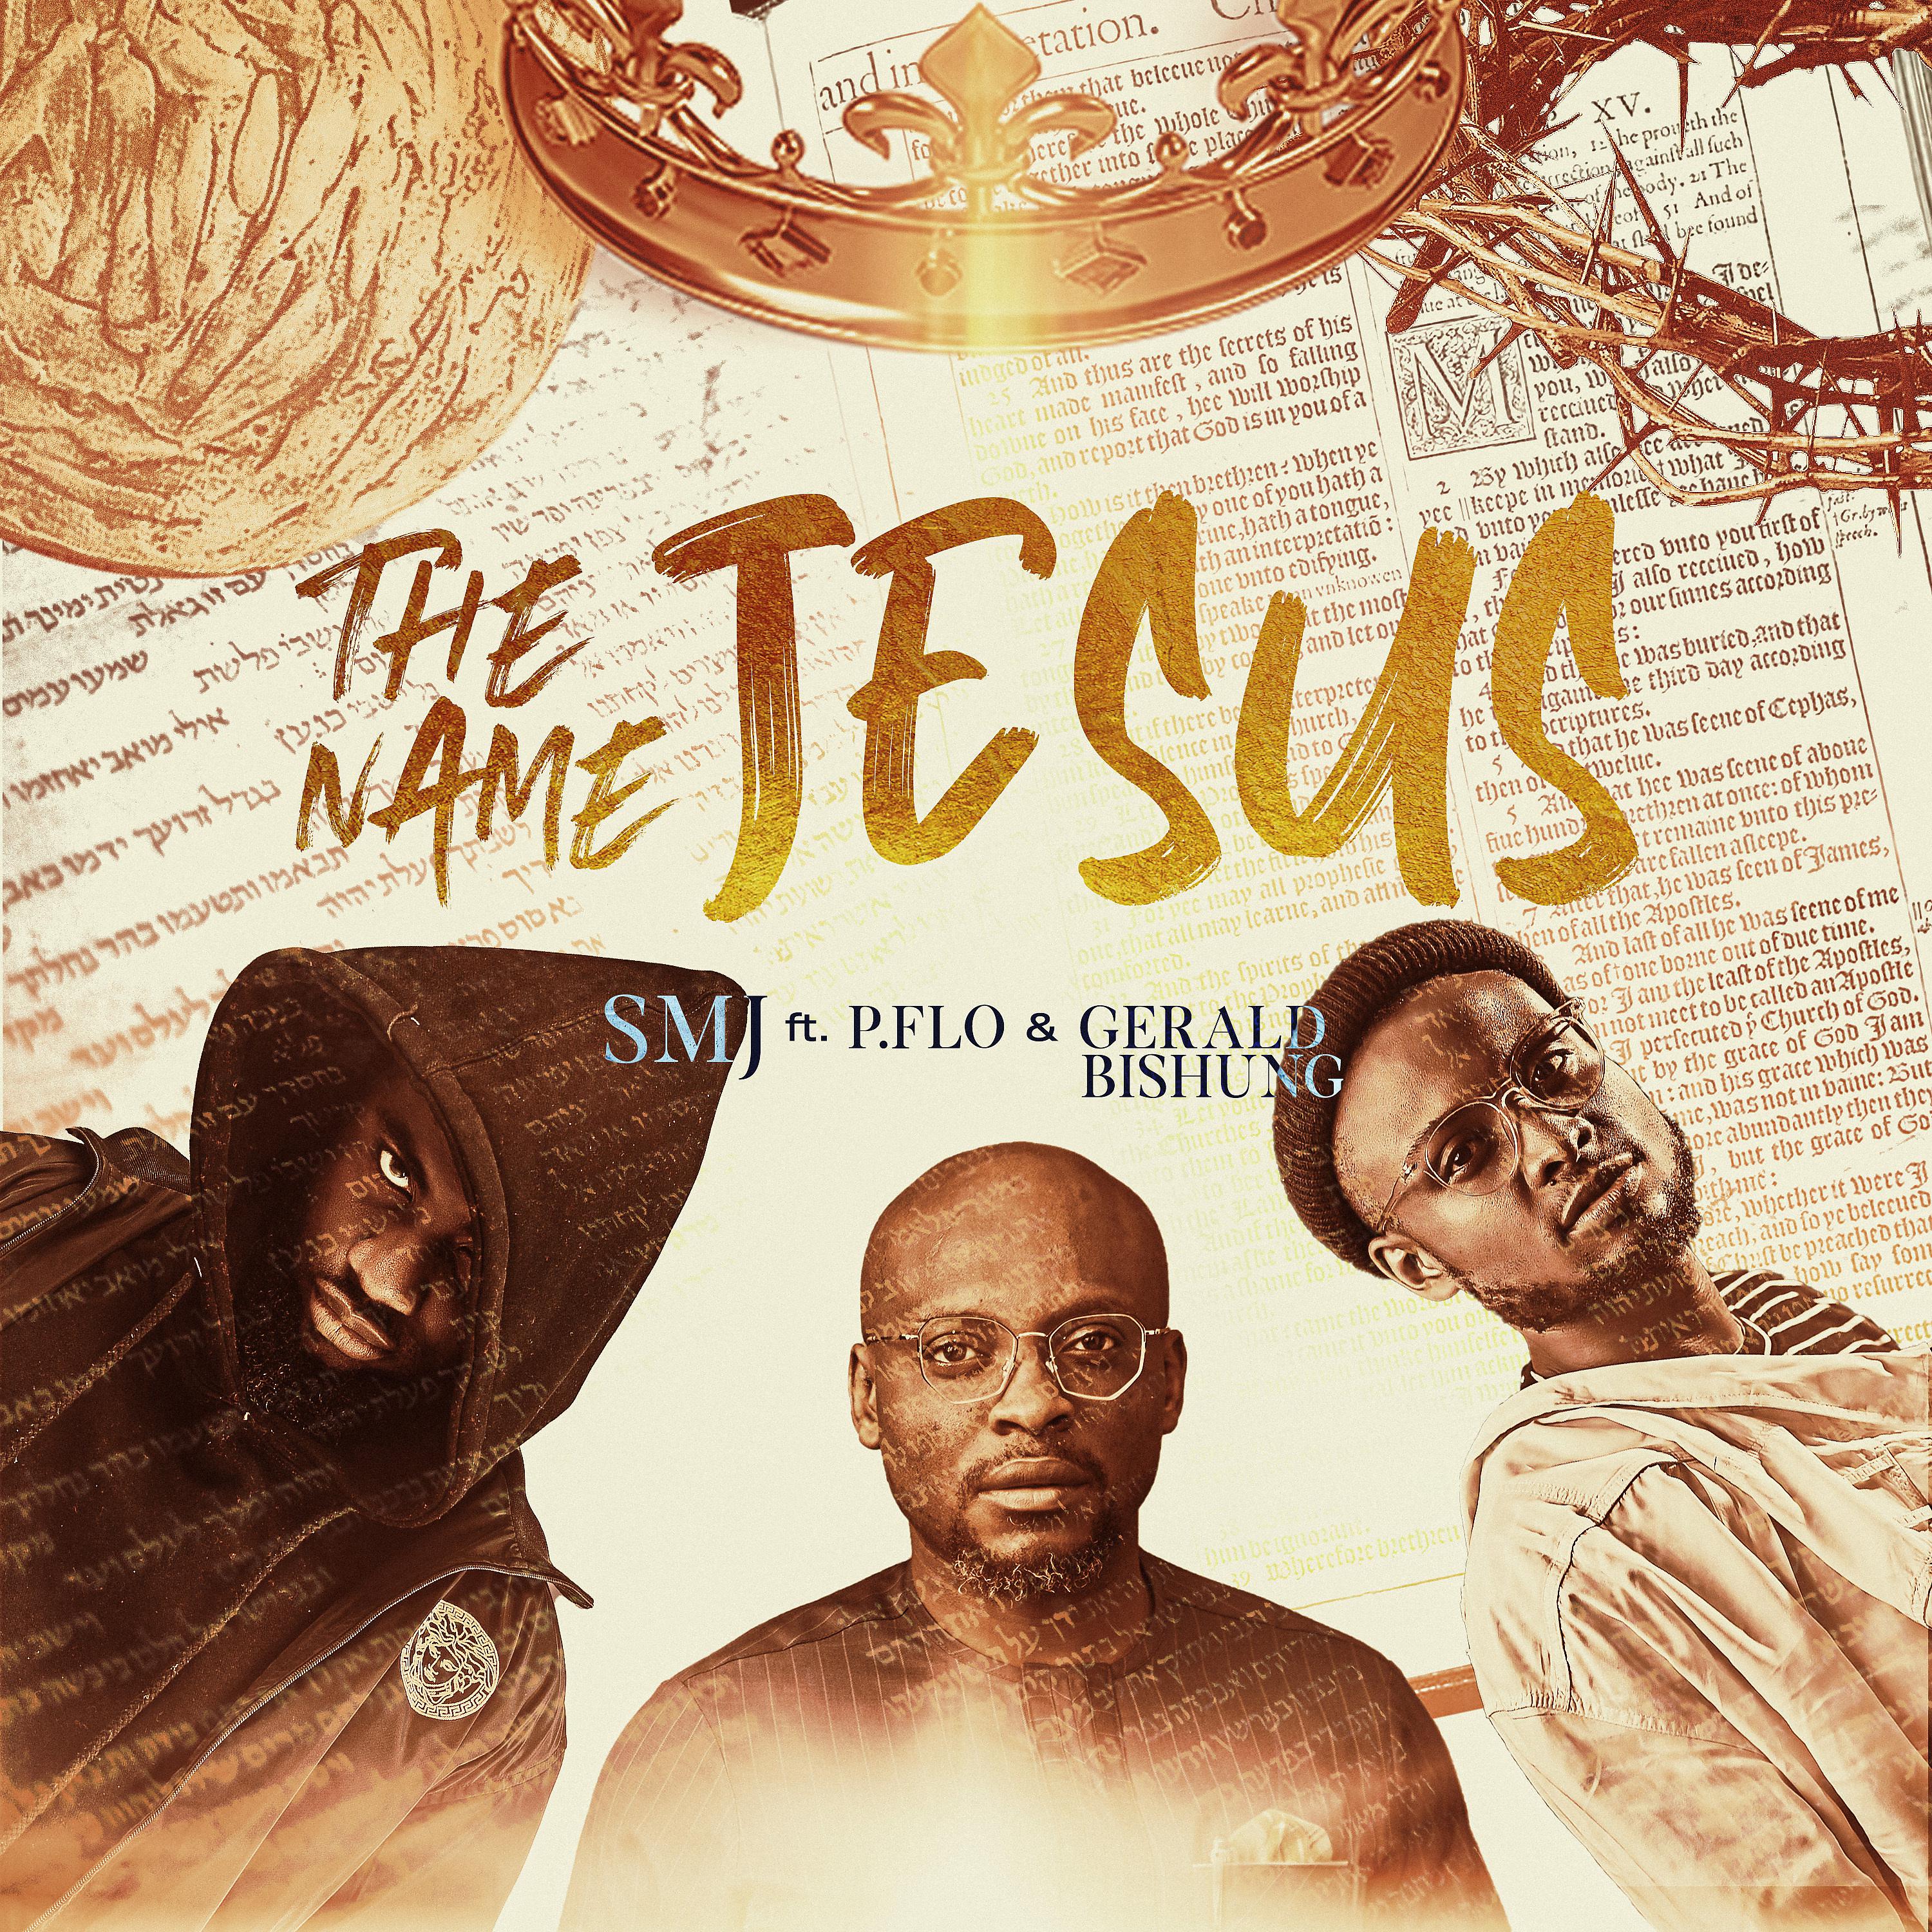 Постер альбома The Name Jesus